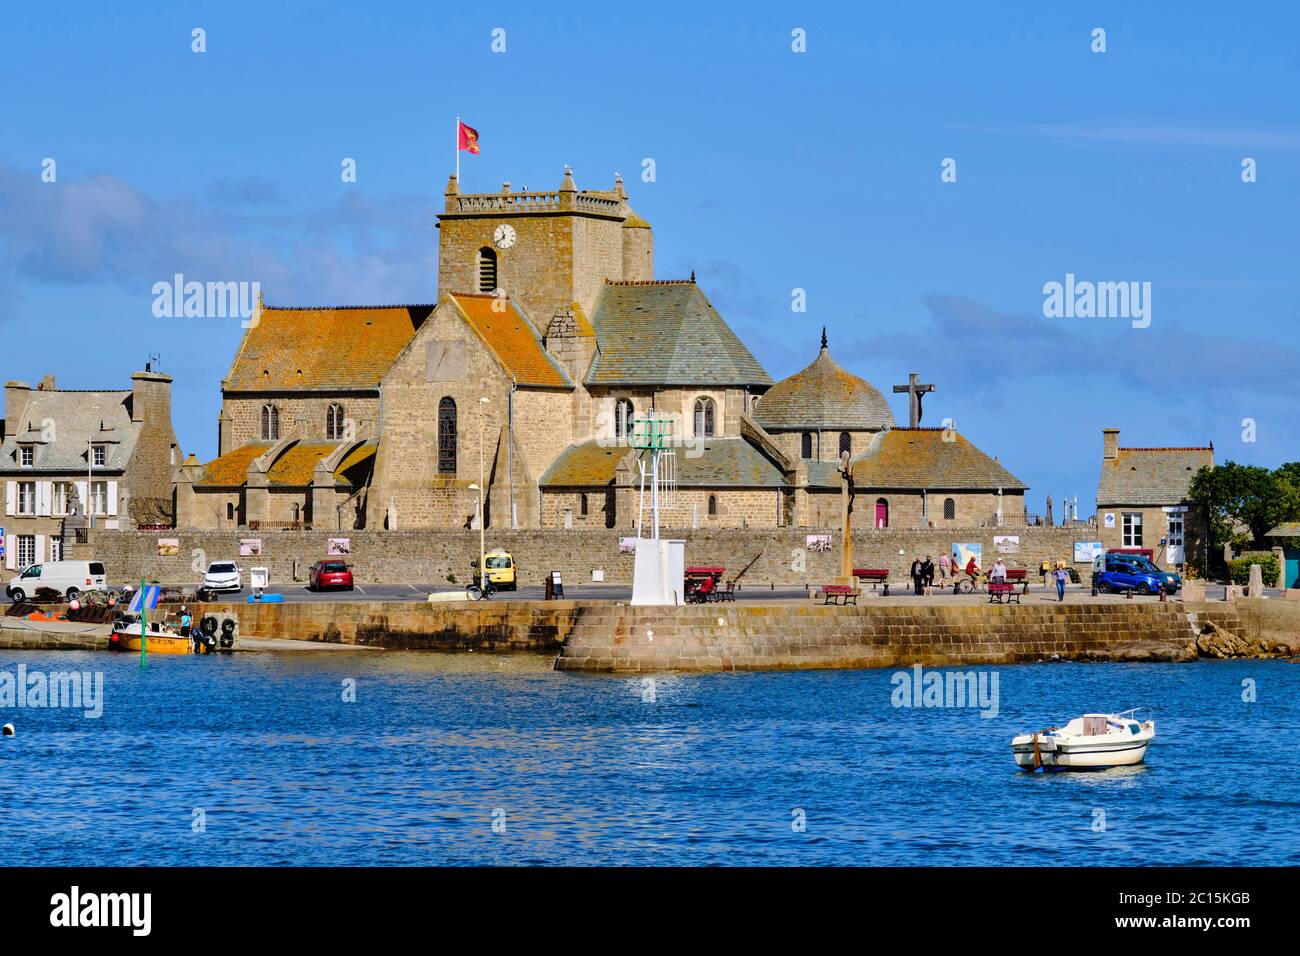 France, Normandie, département de la Manche, Cotentin, Barfleur, labellisés les plus Beaux villages de France, port de pêche et église Saint-Nicolas Banque D'Images